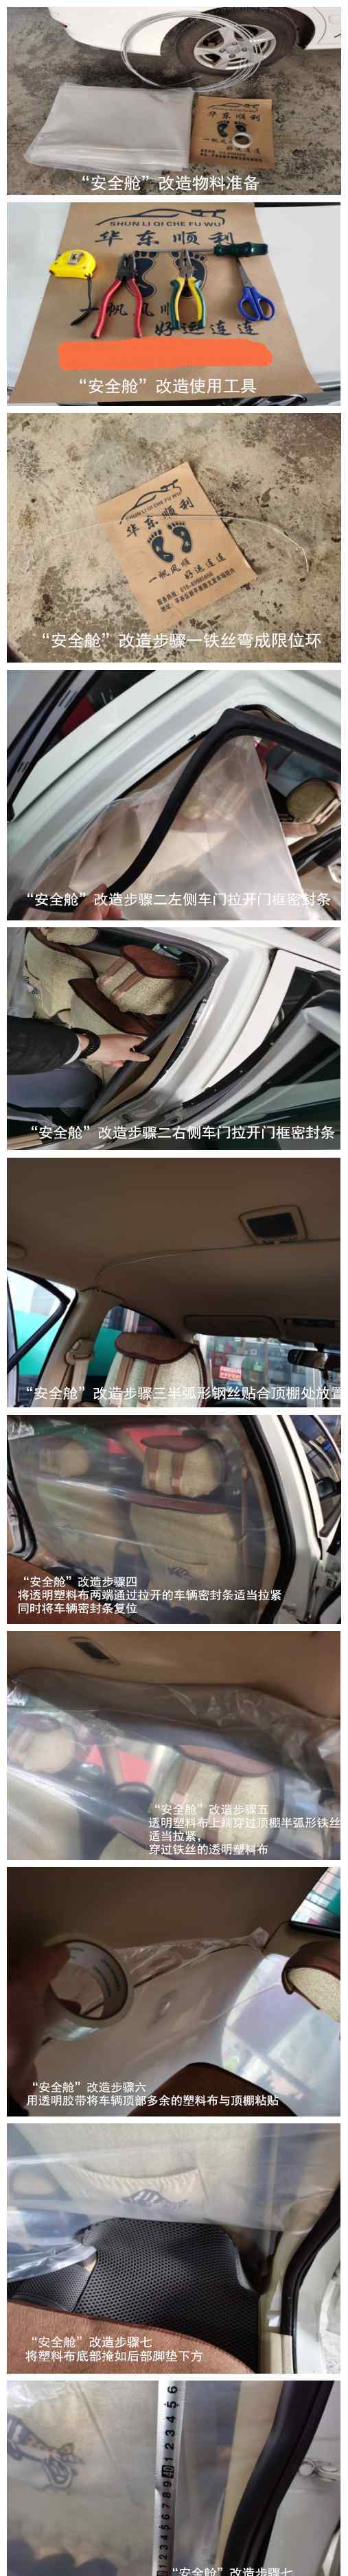 安全舱 附送教程！这位北京“的哥”真贴心，出租车里加了“安全舱”